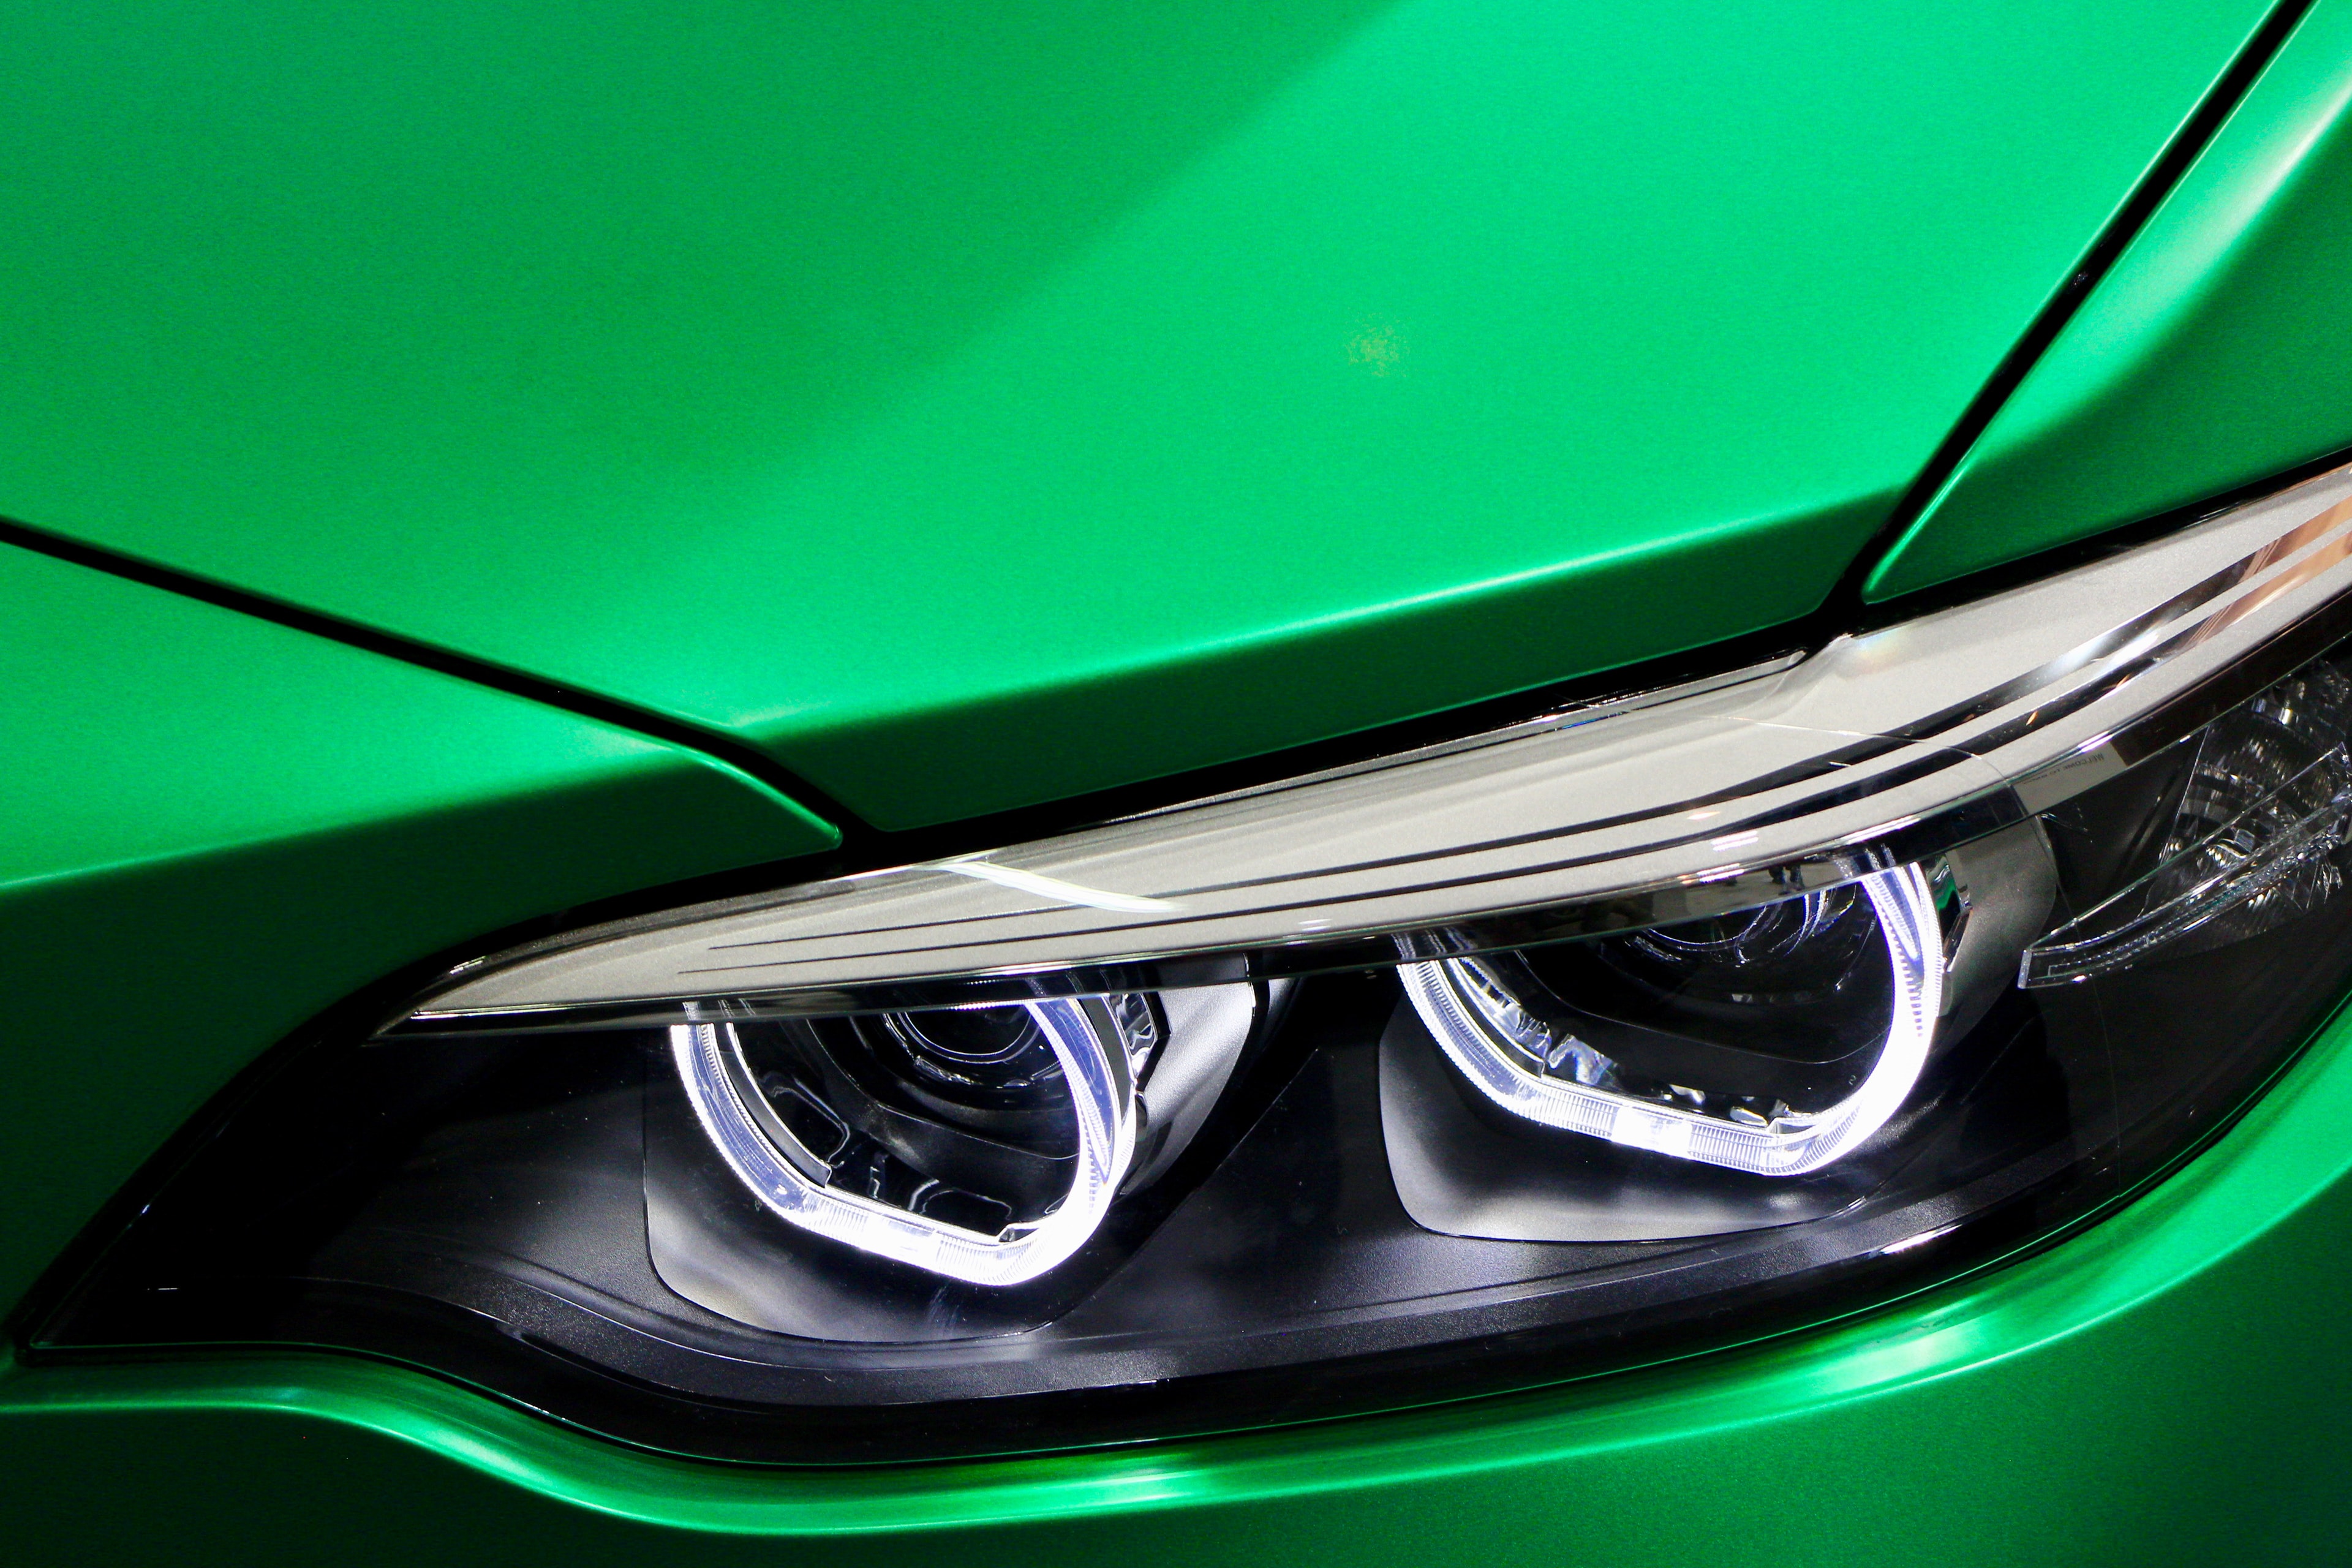 linker koplamp van een BMW met een opvallend mooie
							     groen-metallische lak; Teaser:
							     aandachtige demontage- en montagewerkzaamheden voor ecologisch en
							     milieuvriendelijk waardeherstel van autos door Teamwise.